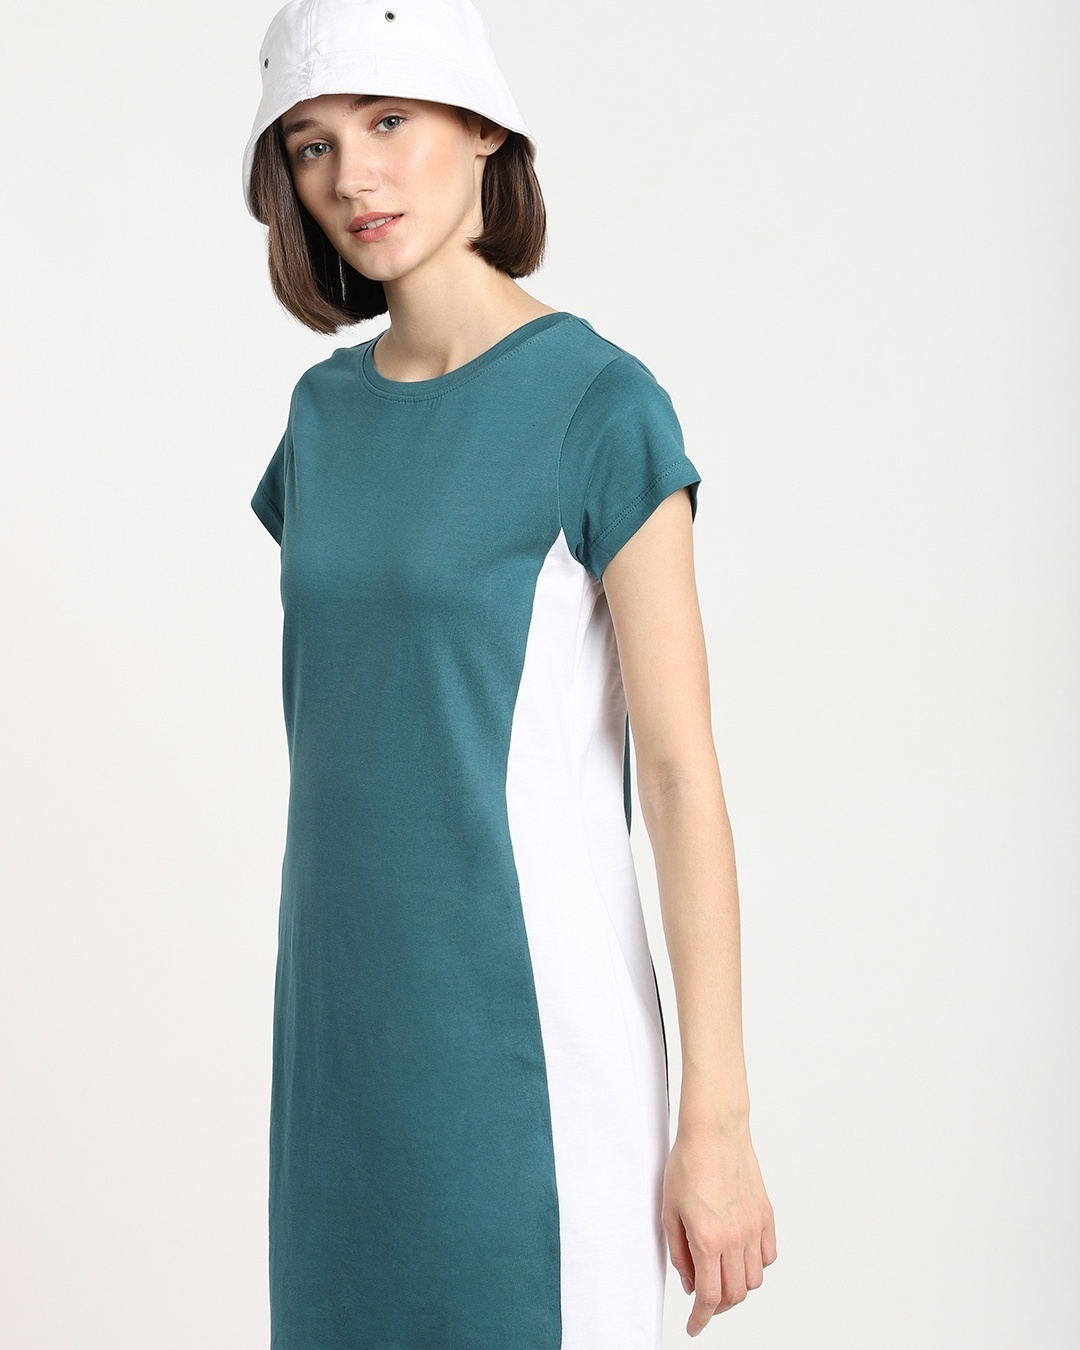 Shop Atlantic Deep Solid Side Cut N Sew Cap Sleeves Slim Fit Dress